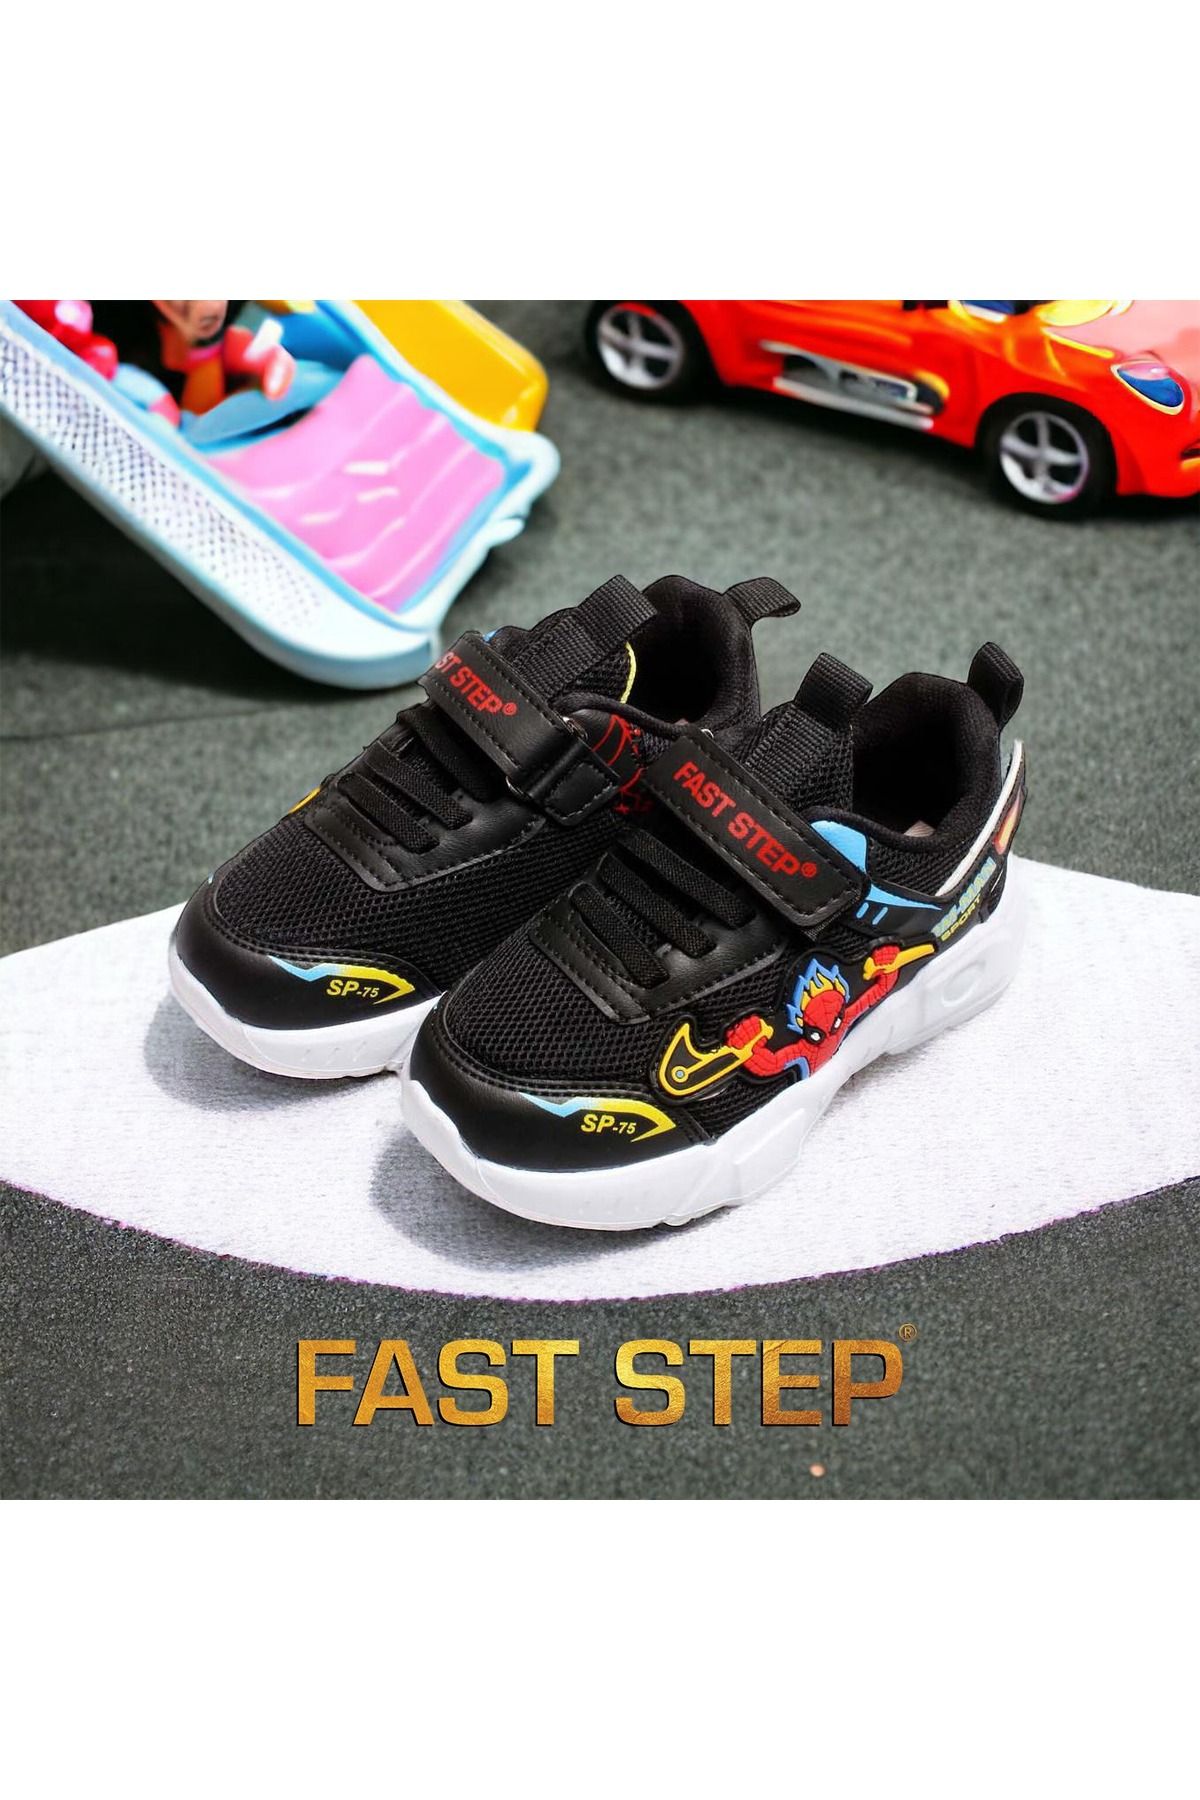 Fast Step Çocuk Spor Anatomik Taban Hafif Sneaker Unisex Ayakkabı 615xca2023